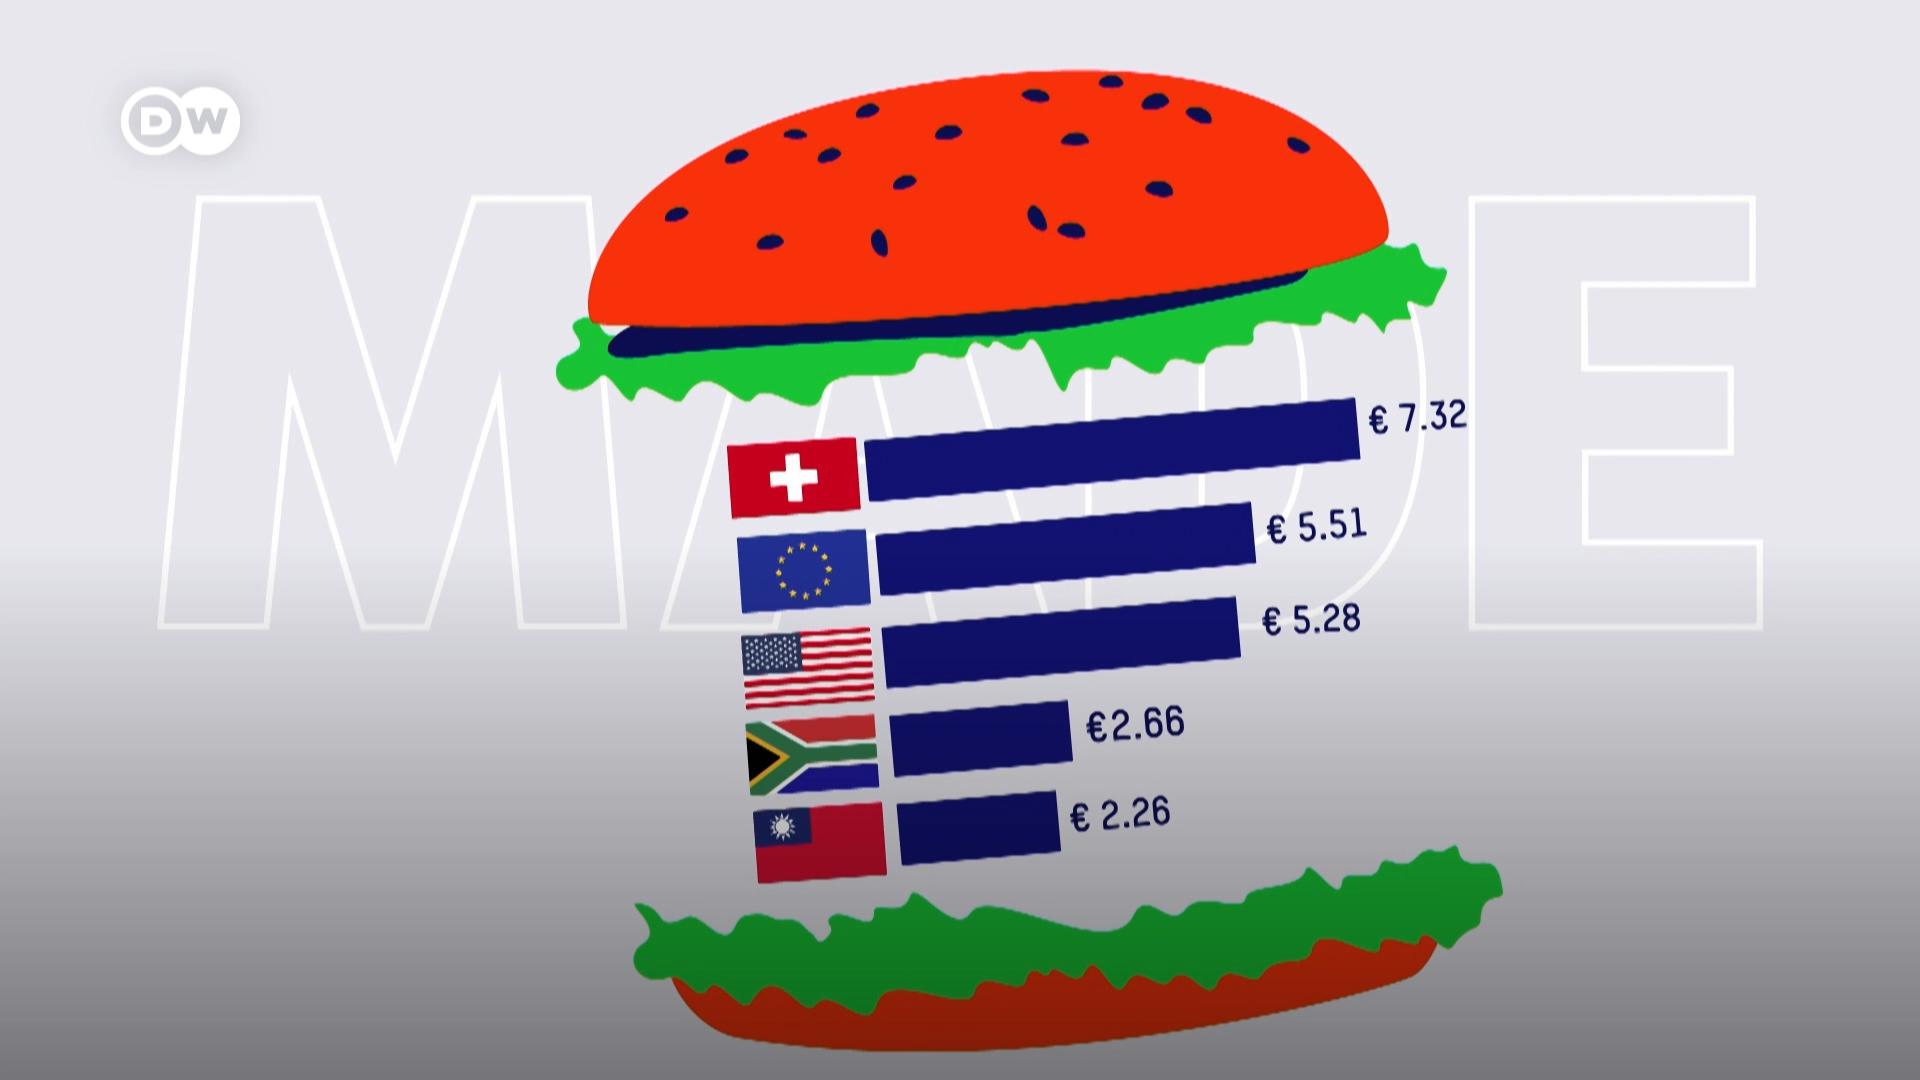 巨无霸汉堡（又译大麦克）在世界各地长得都一样，但价格迥异，因此它是比较货币购买力的一个很好的工具。